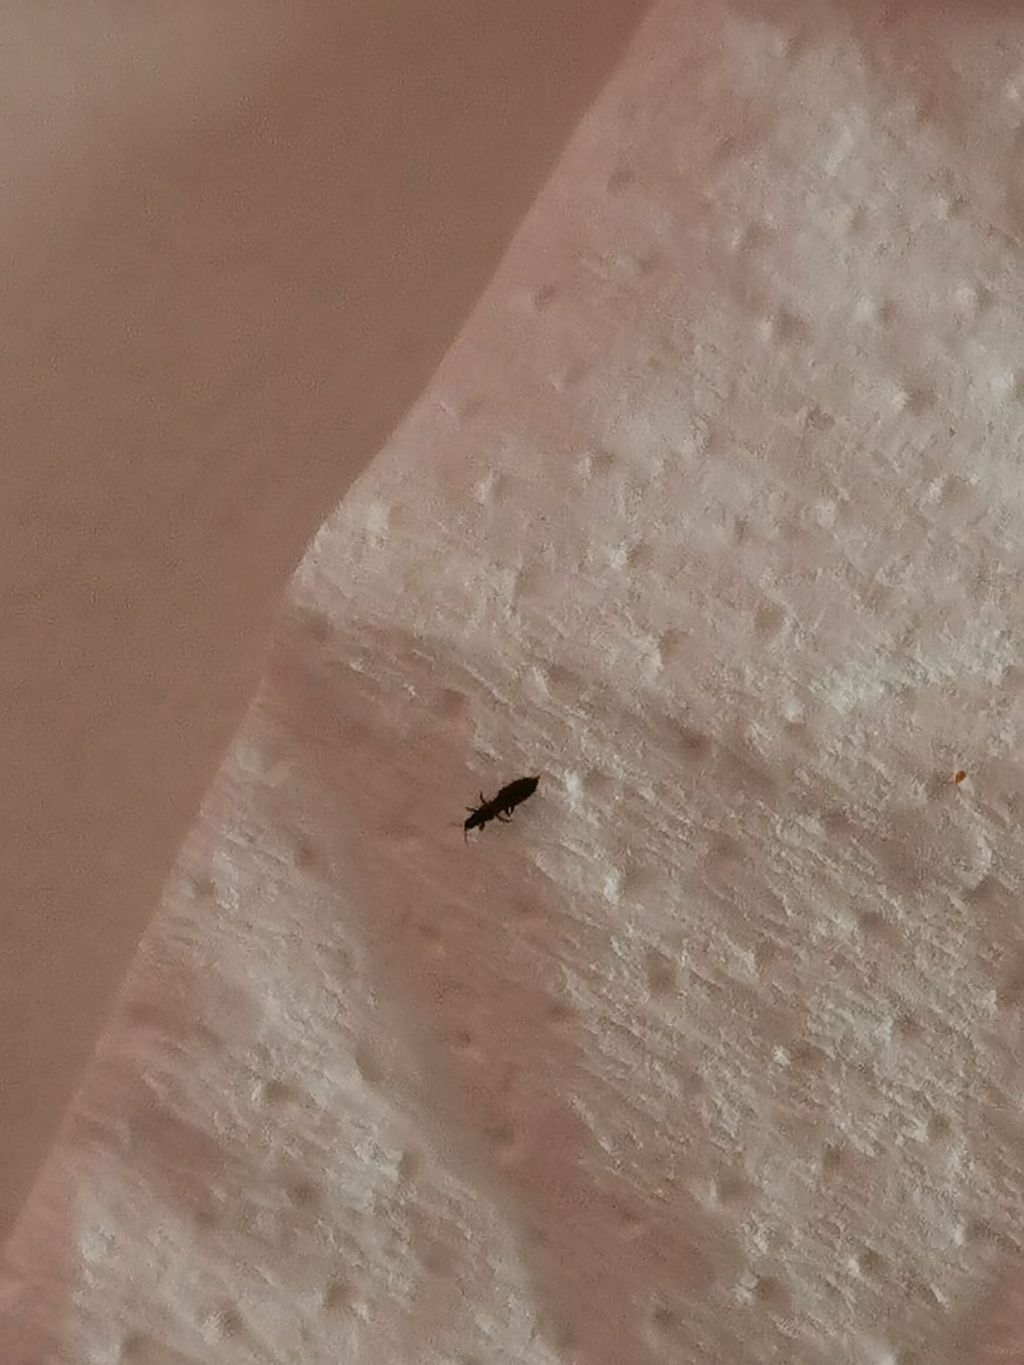 Identificazione questo insetto